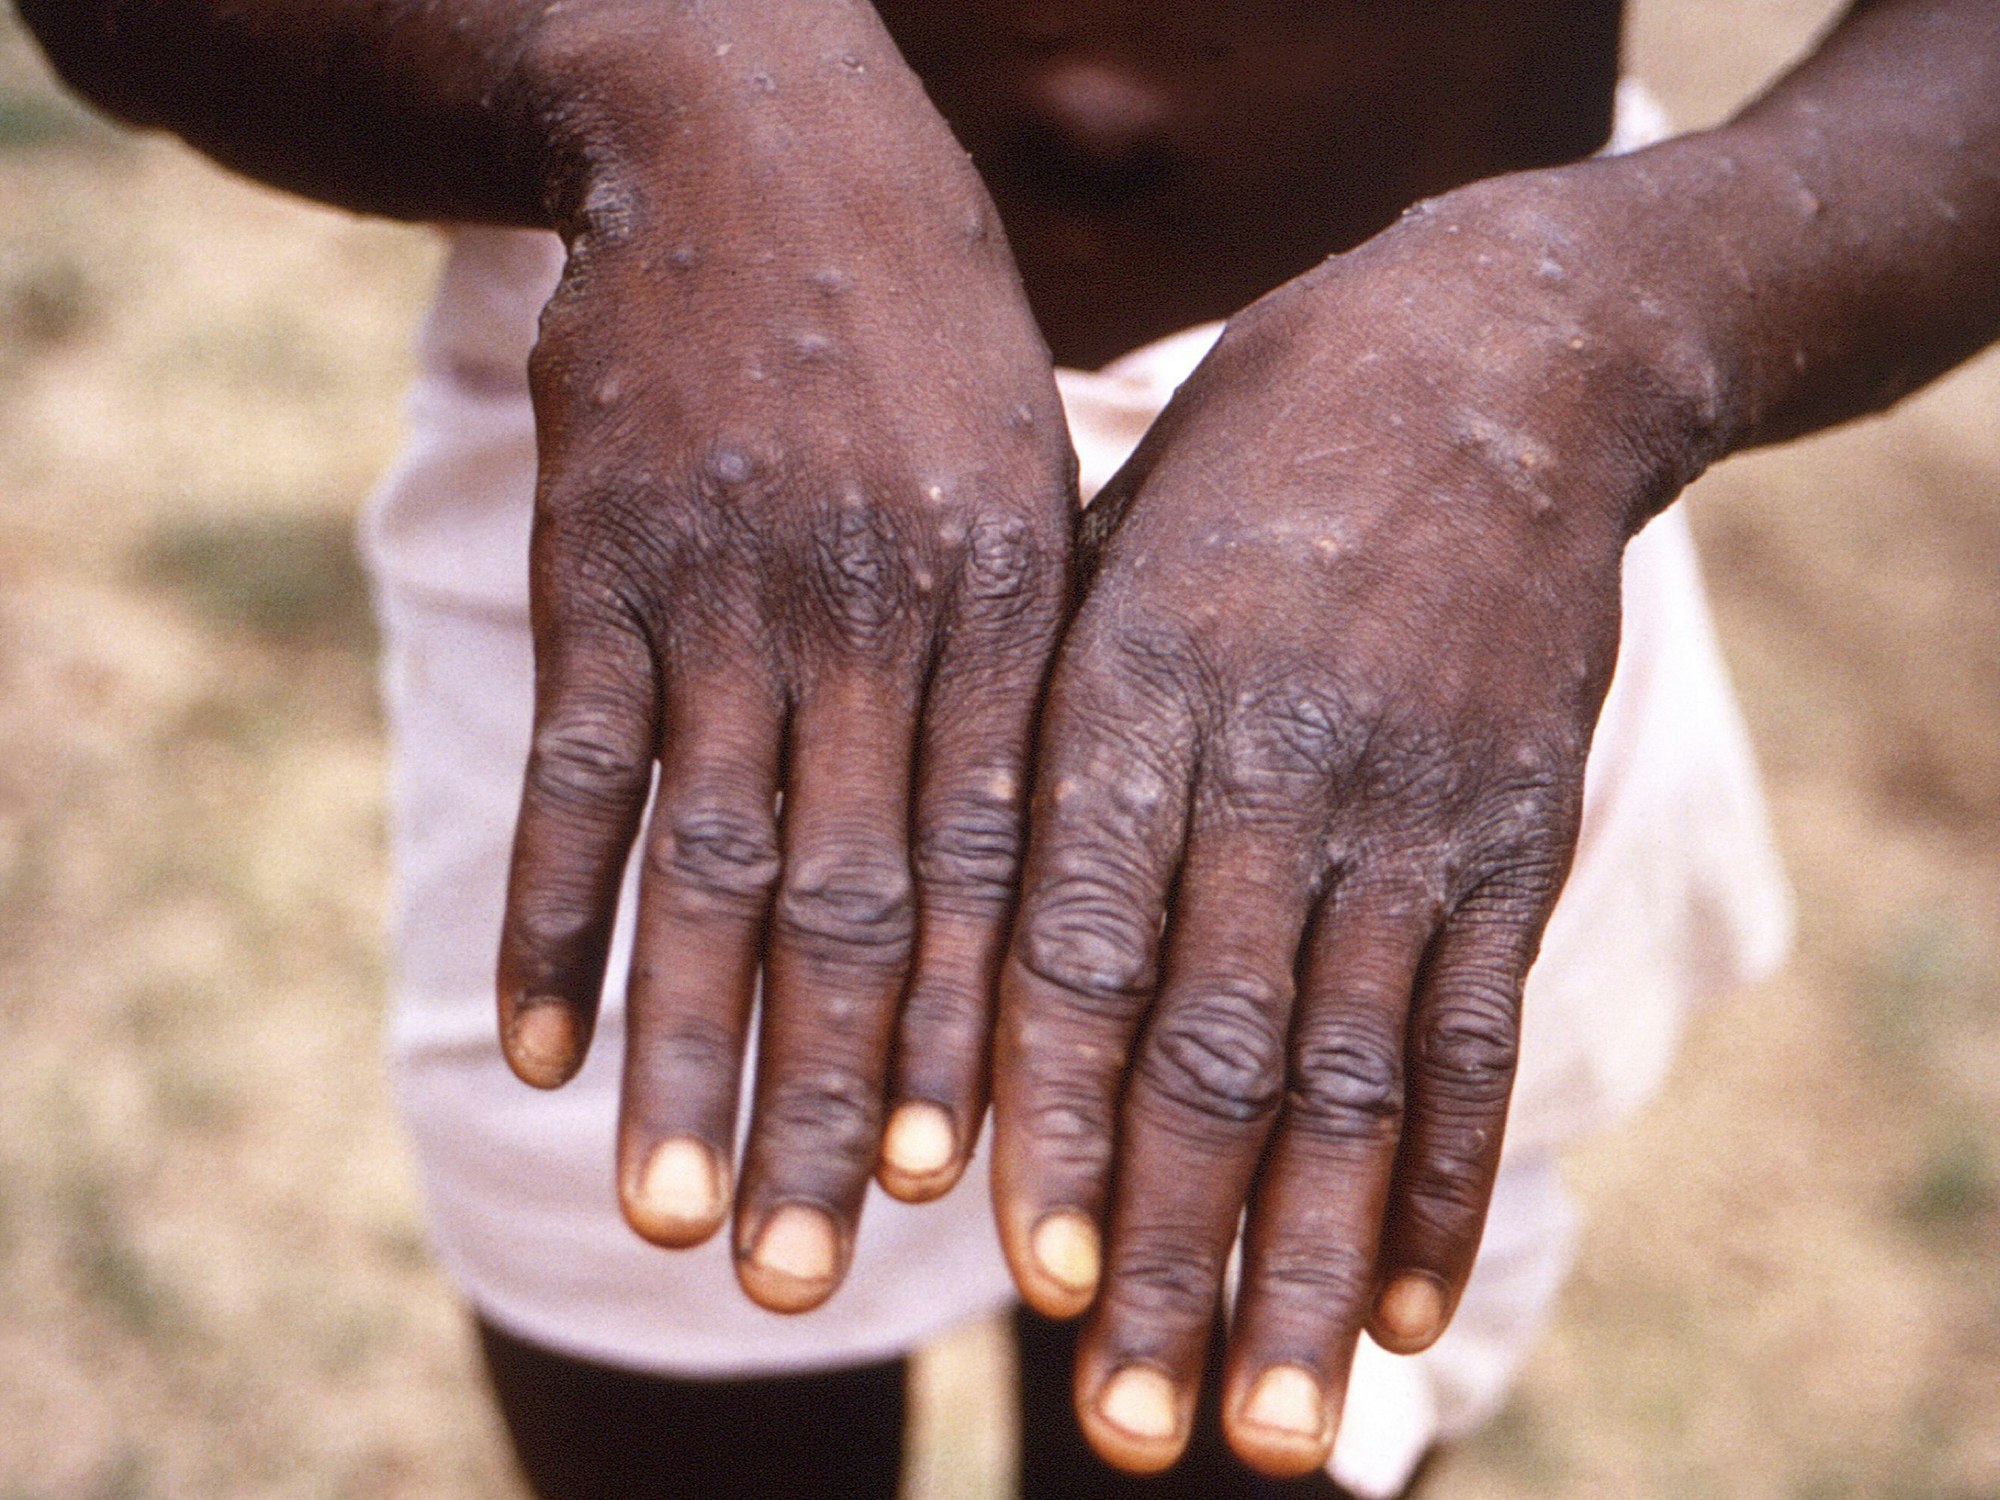 Affenpocken heißen ab sofort Mpox. Dieses Symbolbild aus dem Jahr 1997, das von der CDC während einer Untersuchung eines Ausbruchs in der Demokratischen Republik Kongo, dem früheren Zaire, zur Verfügung gestellt wurde, zeigt die Rückenflächen der Hände eines Affenpocken-Patienten, der den charakteristischen Ausschlag in der Erholungsphase zeigt.